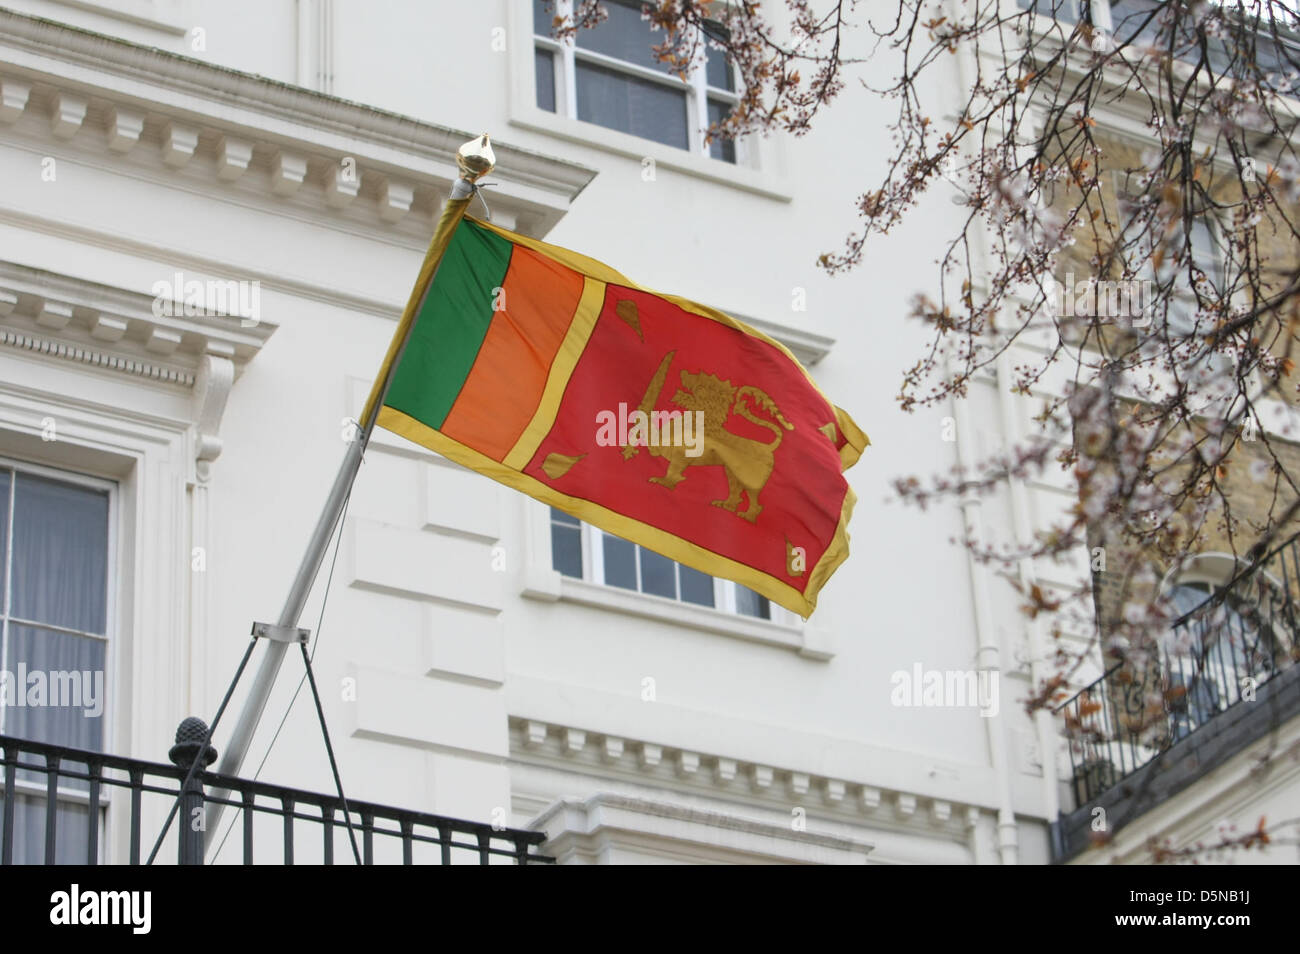 Londres, Royaume-Uni, 05 avril 2013 Sri Lanken drapeau en haut-commissariat sri Lanken où Anjem Choudary Muslim's groupe ait plus de démonstration de prétendues atrocités commises par les Bouddhistes contre les musulmans dans ce pays. Banque D'Images